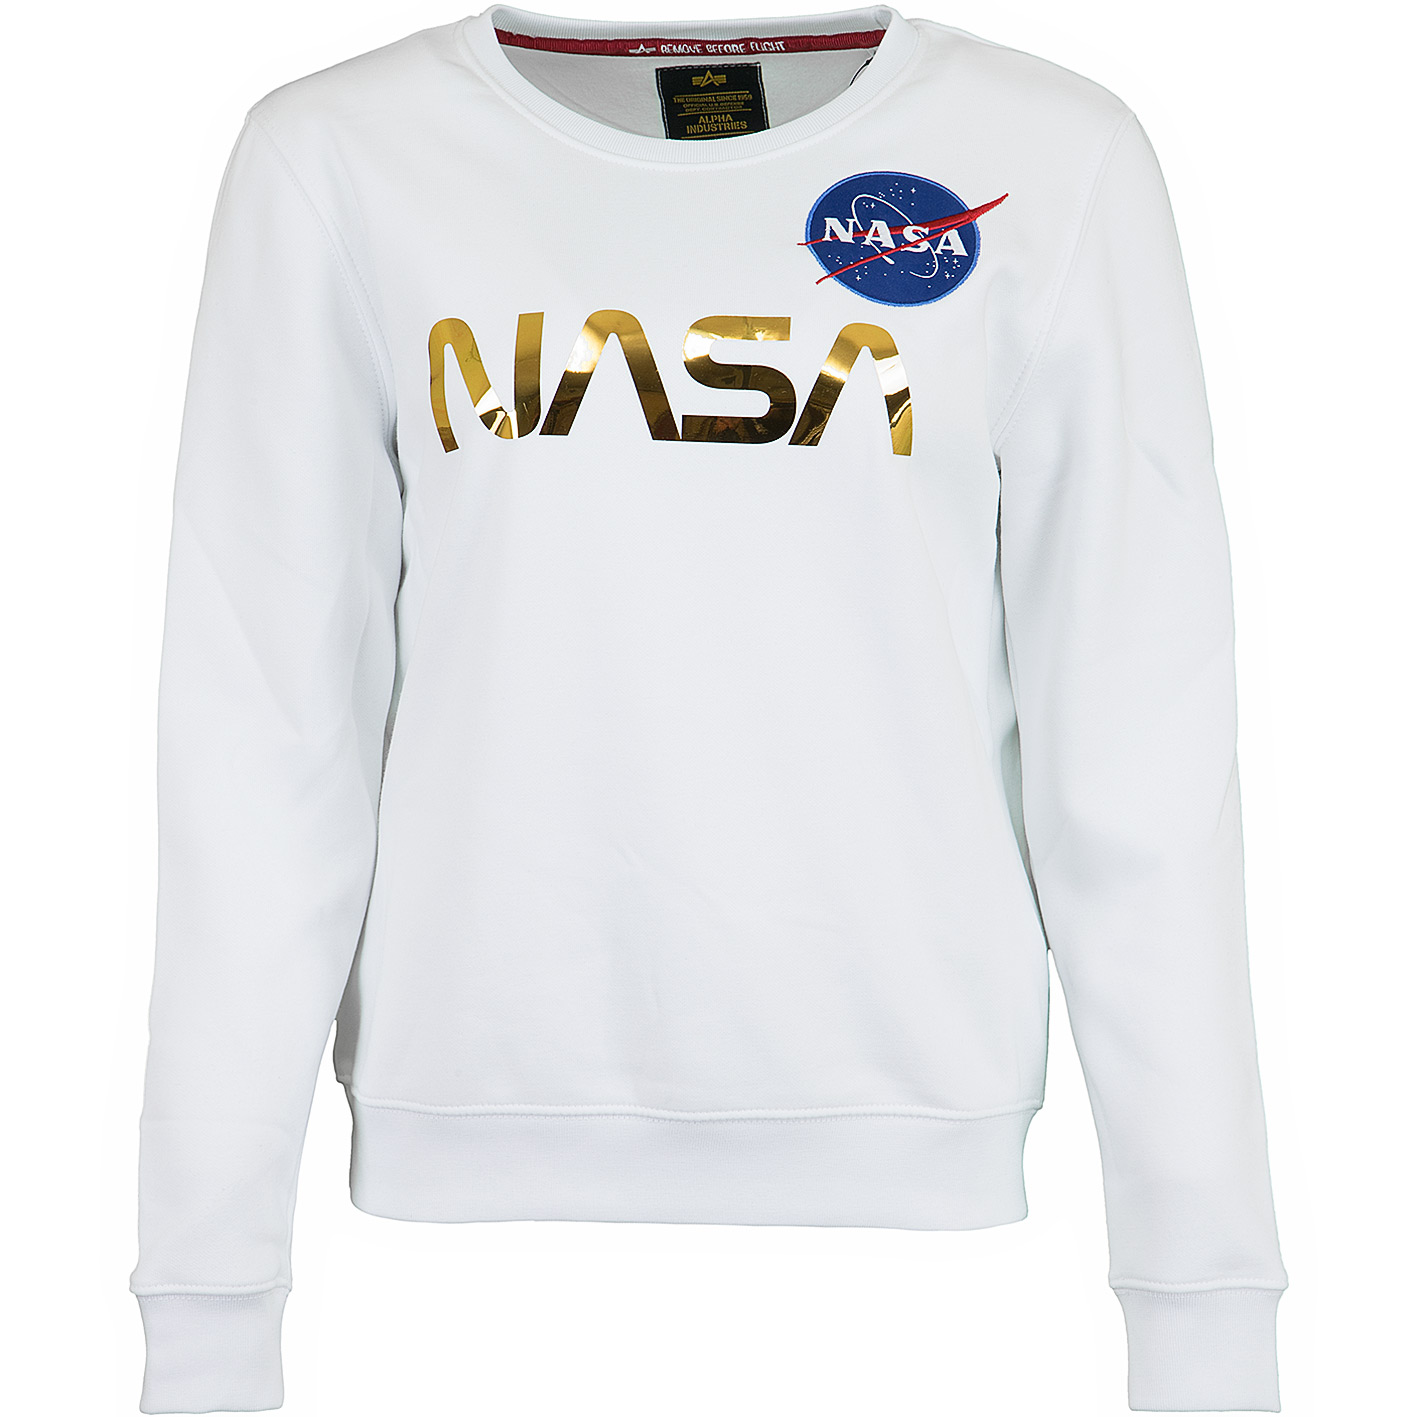 ☆ Alpha Industries Damen Sweatshirt NASA PM weiß/gold - hier bestellen!